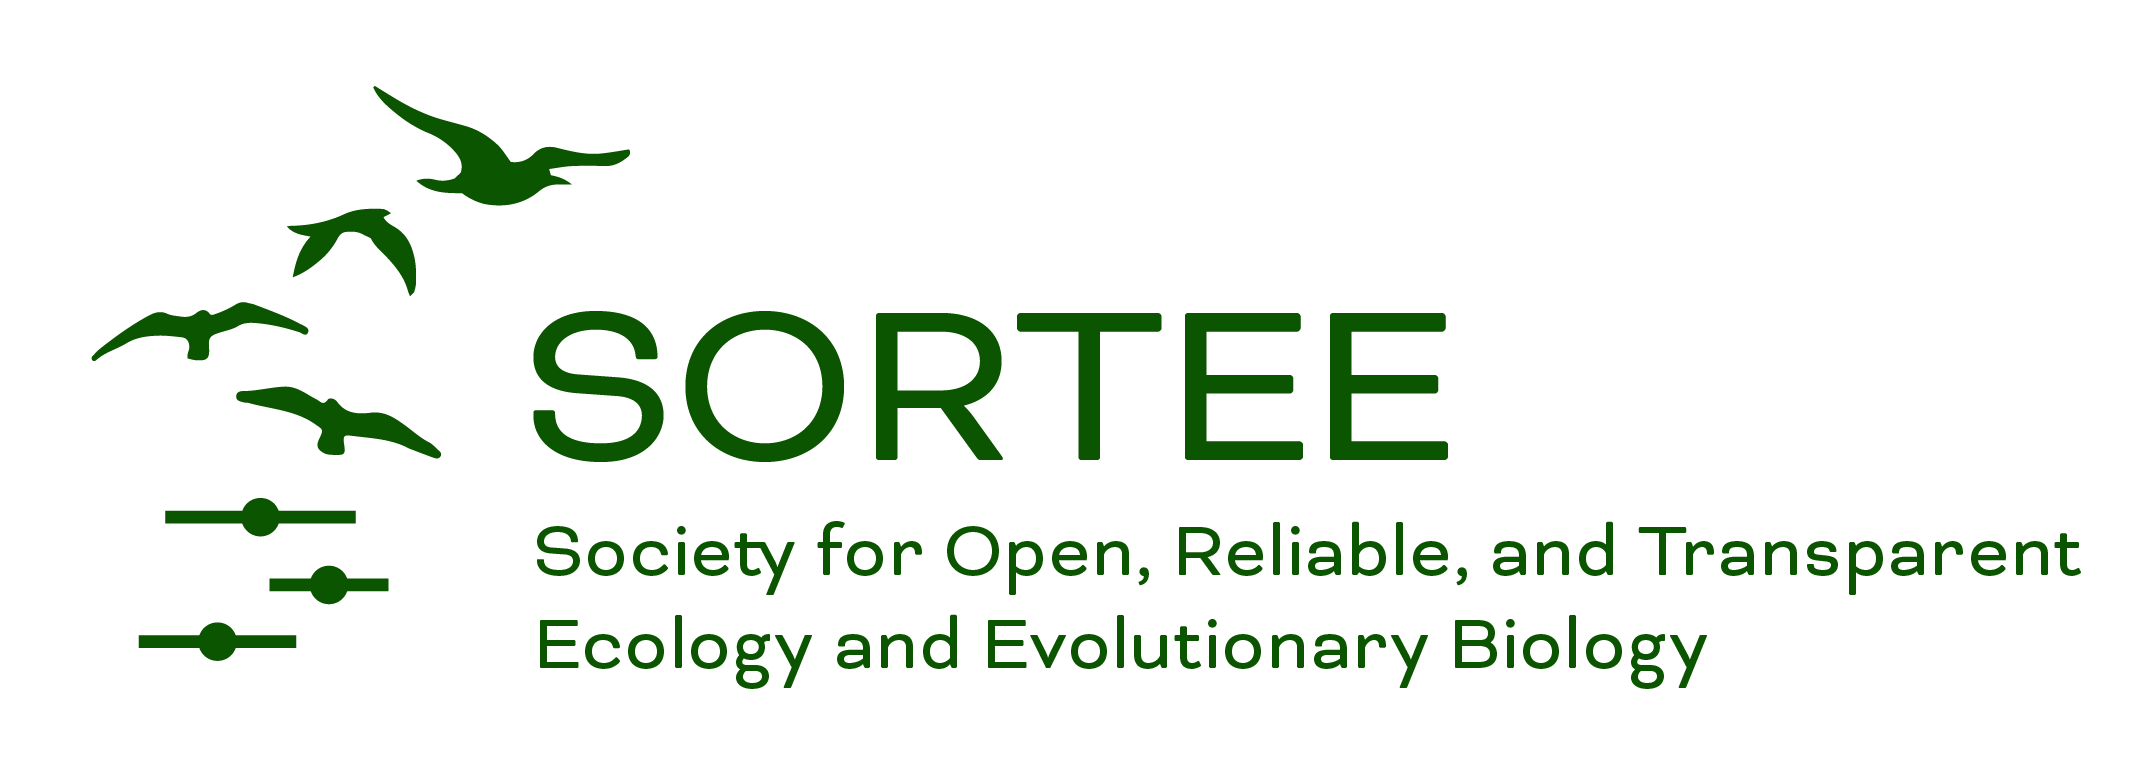 Open Science logo